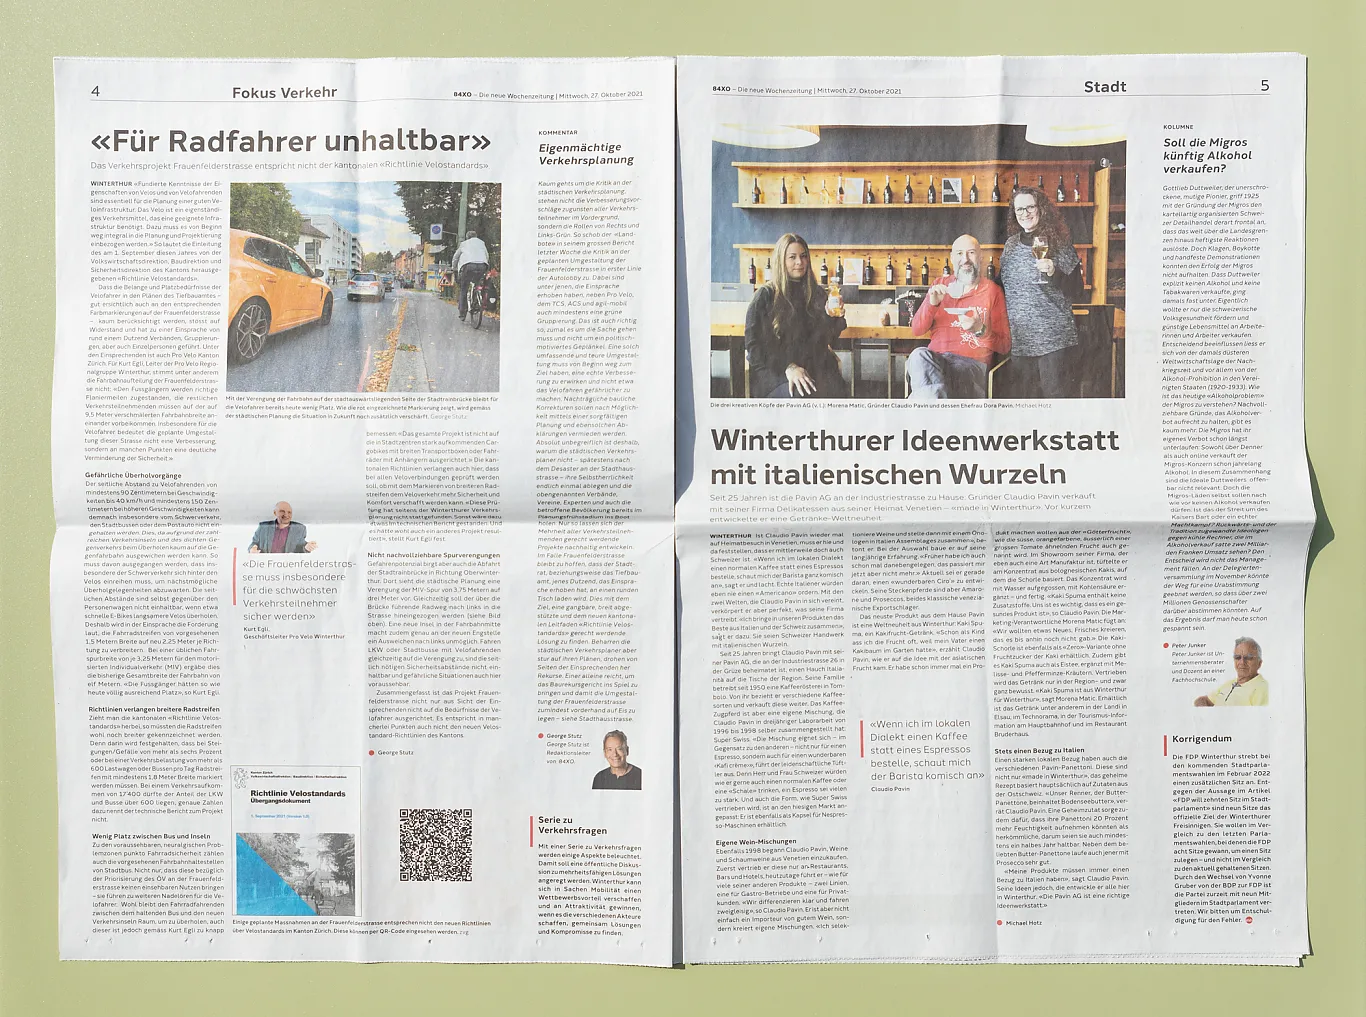 84xo - Die neue Wochenzeitung . Editorial Design